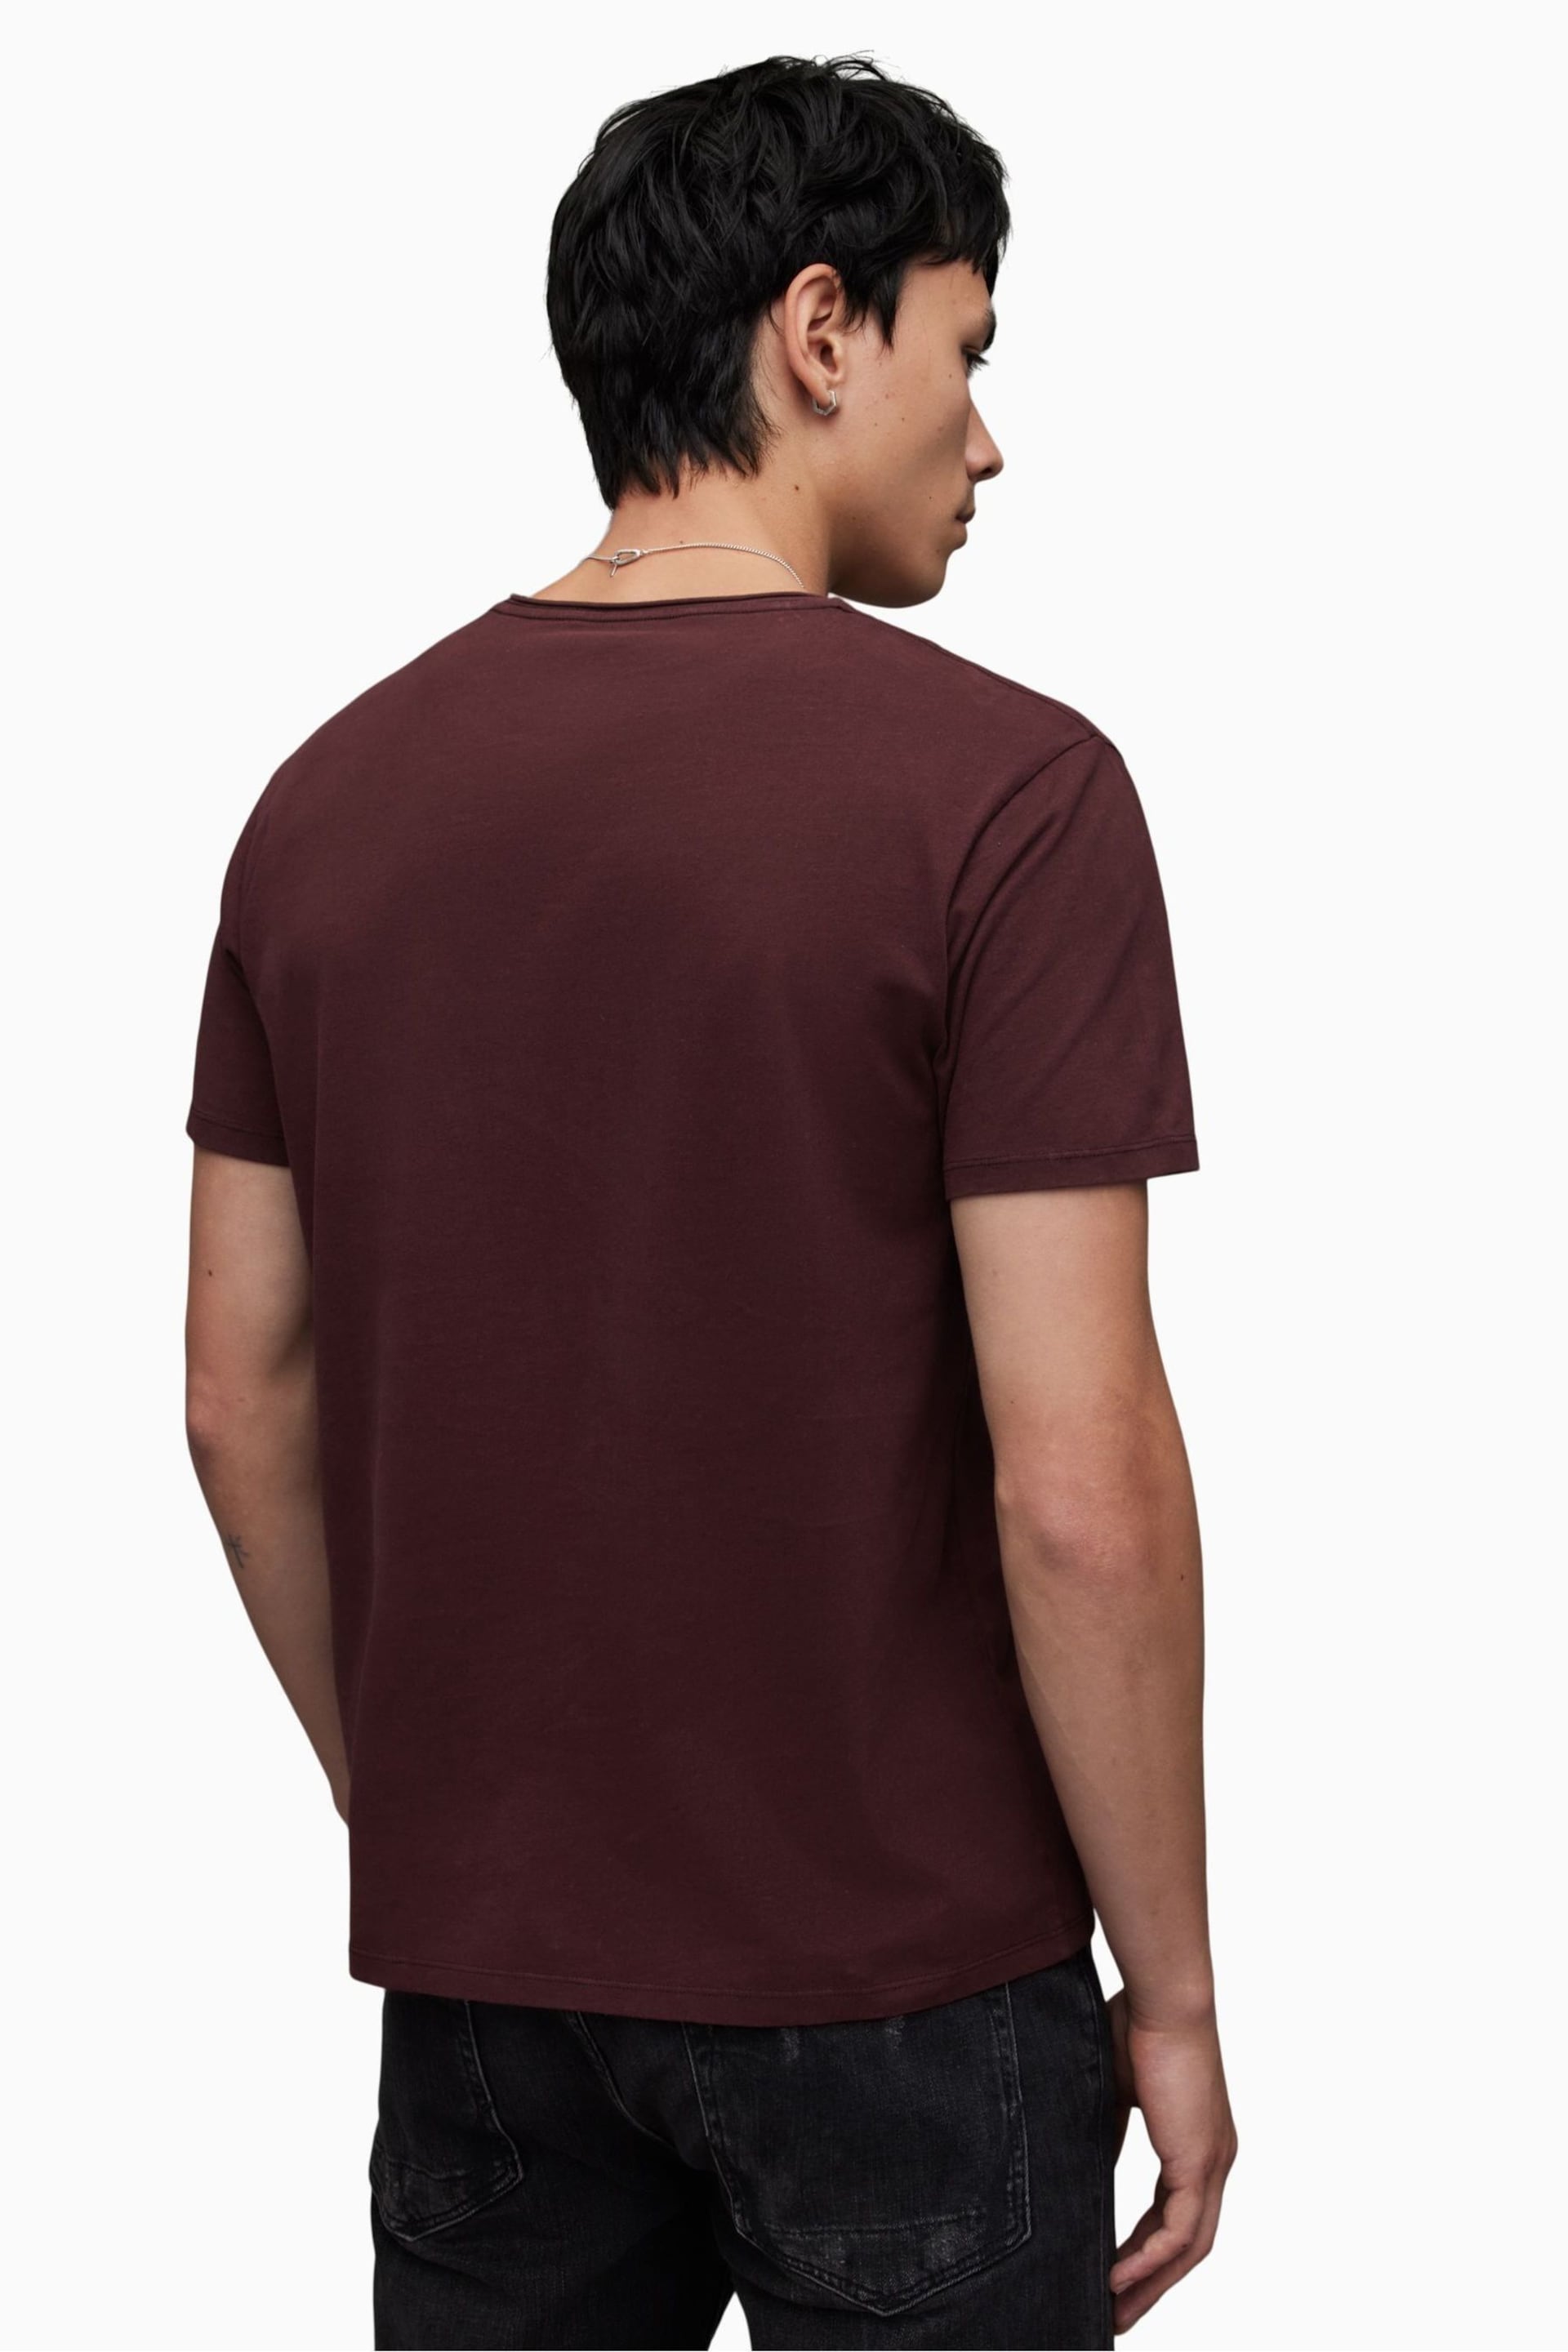 AllSaints Red Bodega Short Sleeve T-Shirt - Image 2 of 5